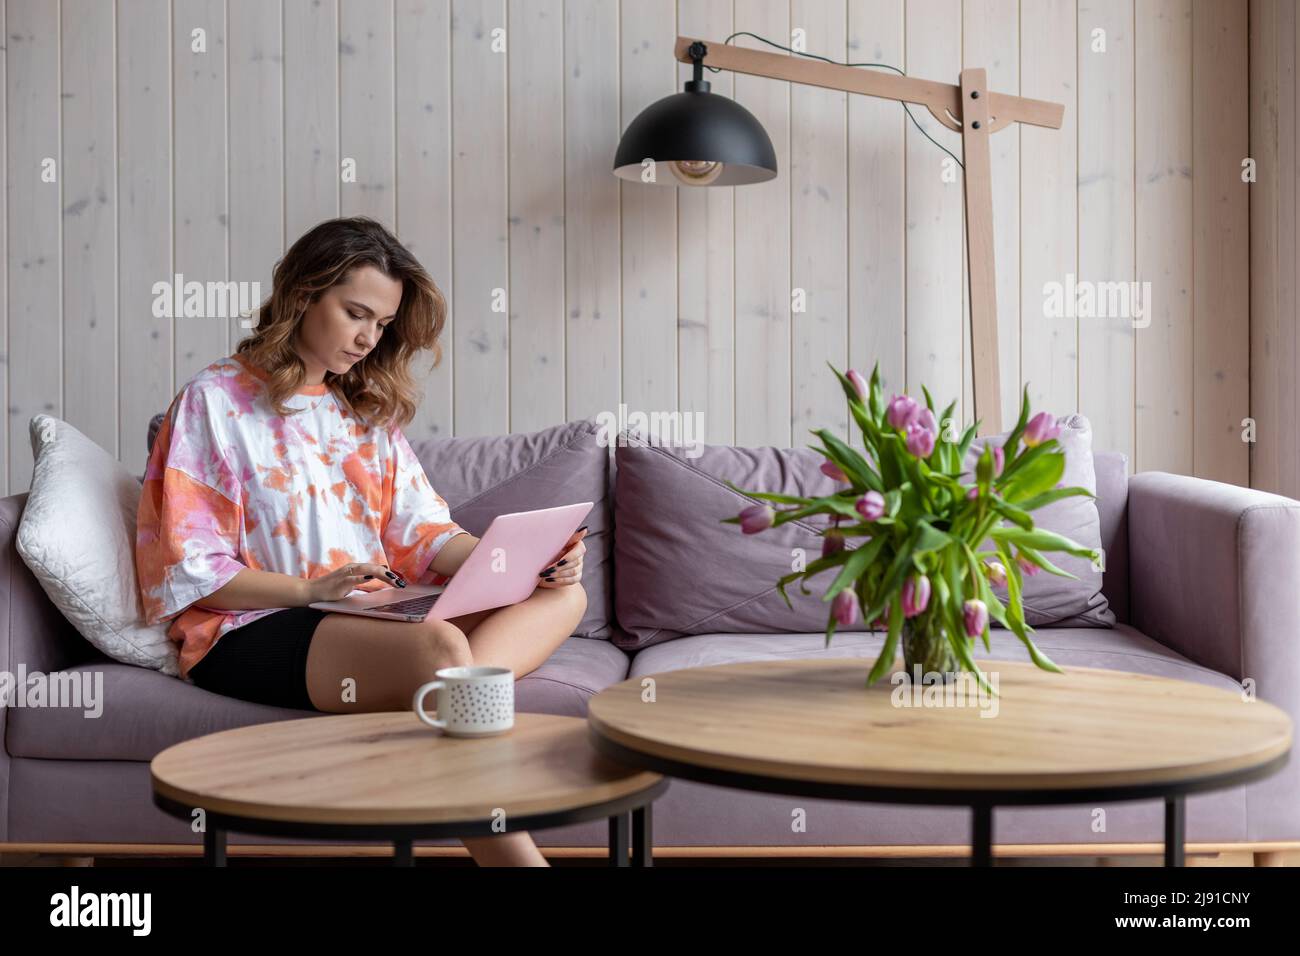 Online zu Hause arbeiten. Junge charmante braunhaarige Frau mit langen Haaren in bequemer Heimkleidung arbeitet zu Hause im Internet auf einem gemütlichen Sofa sitzend Stockfoto